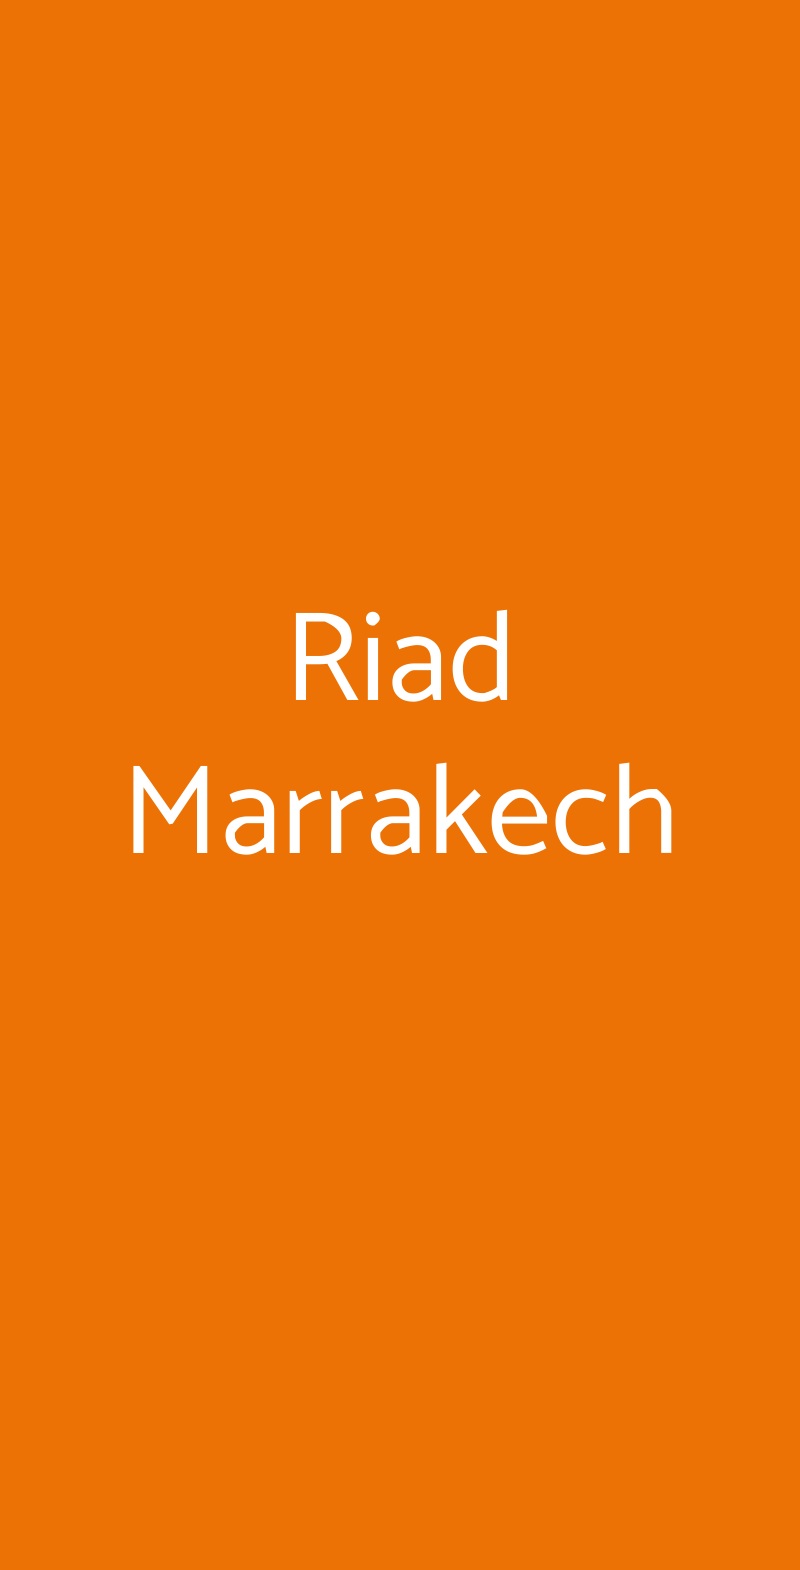 Riad Marrakech Milano menù 1 pagina